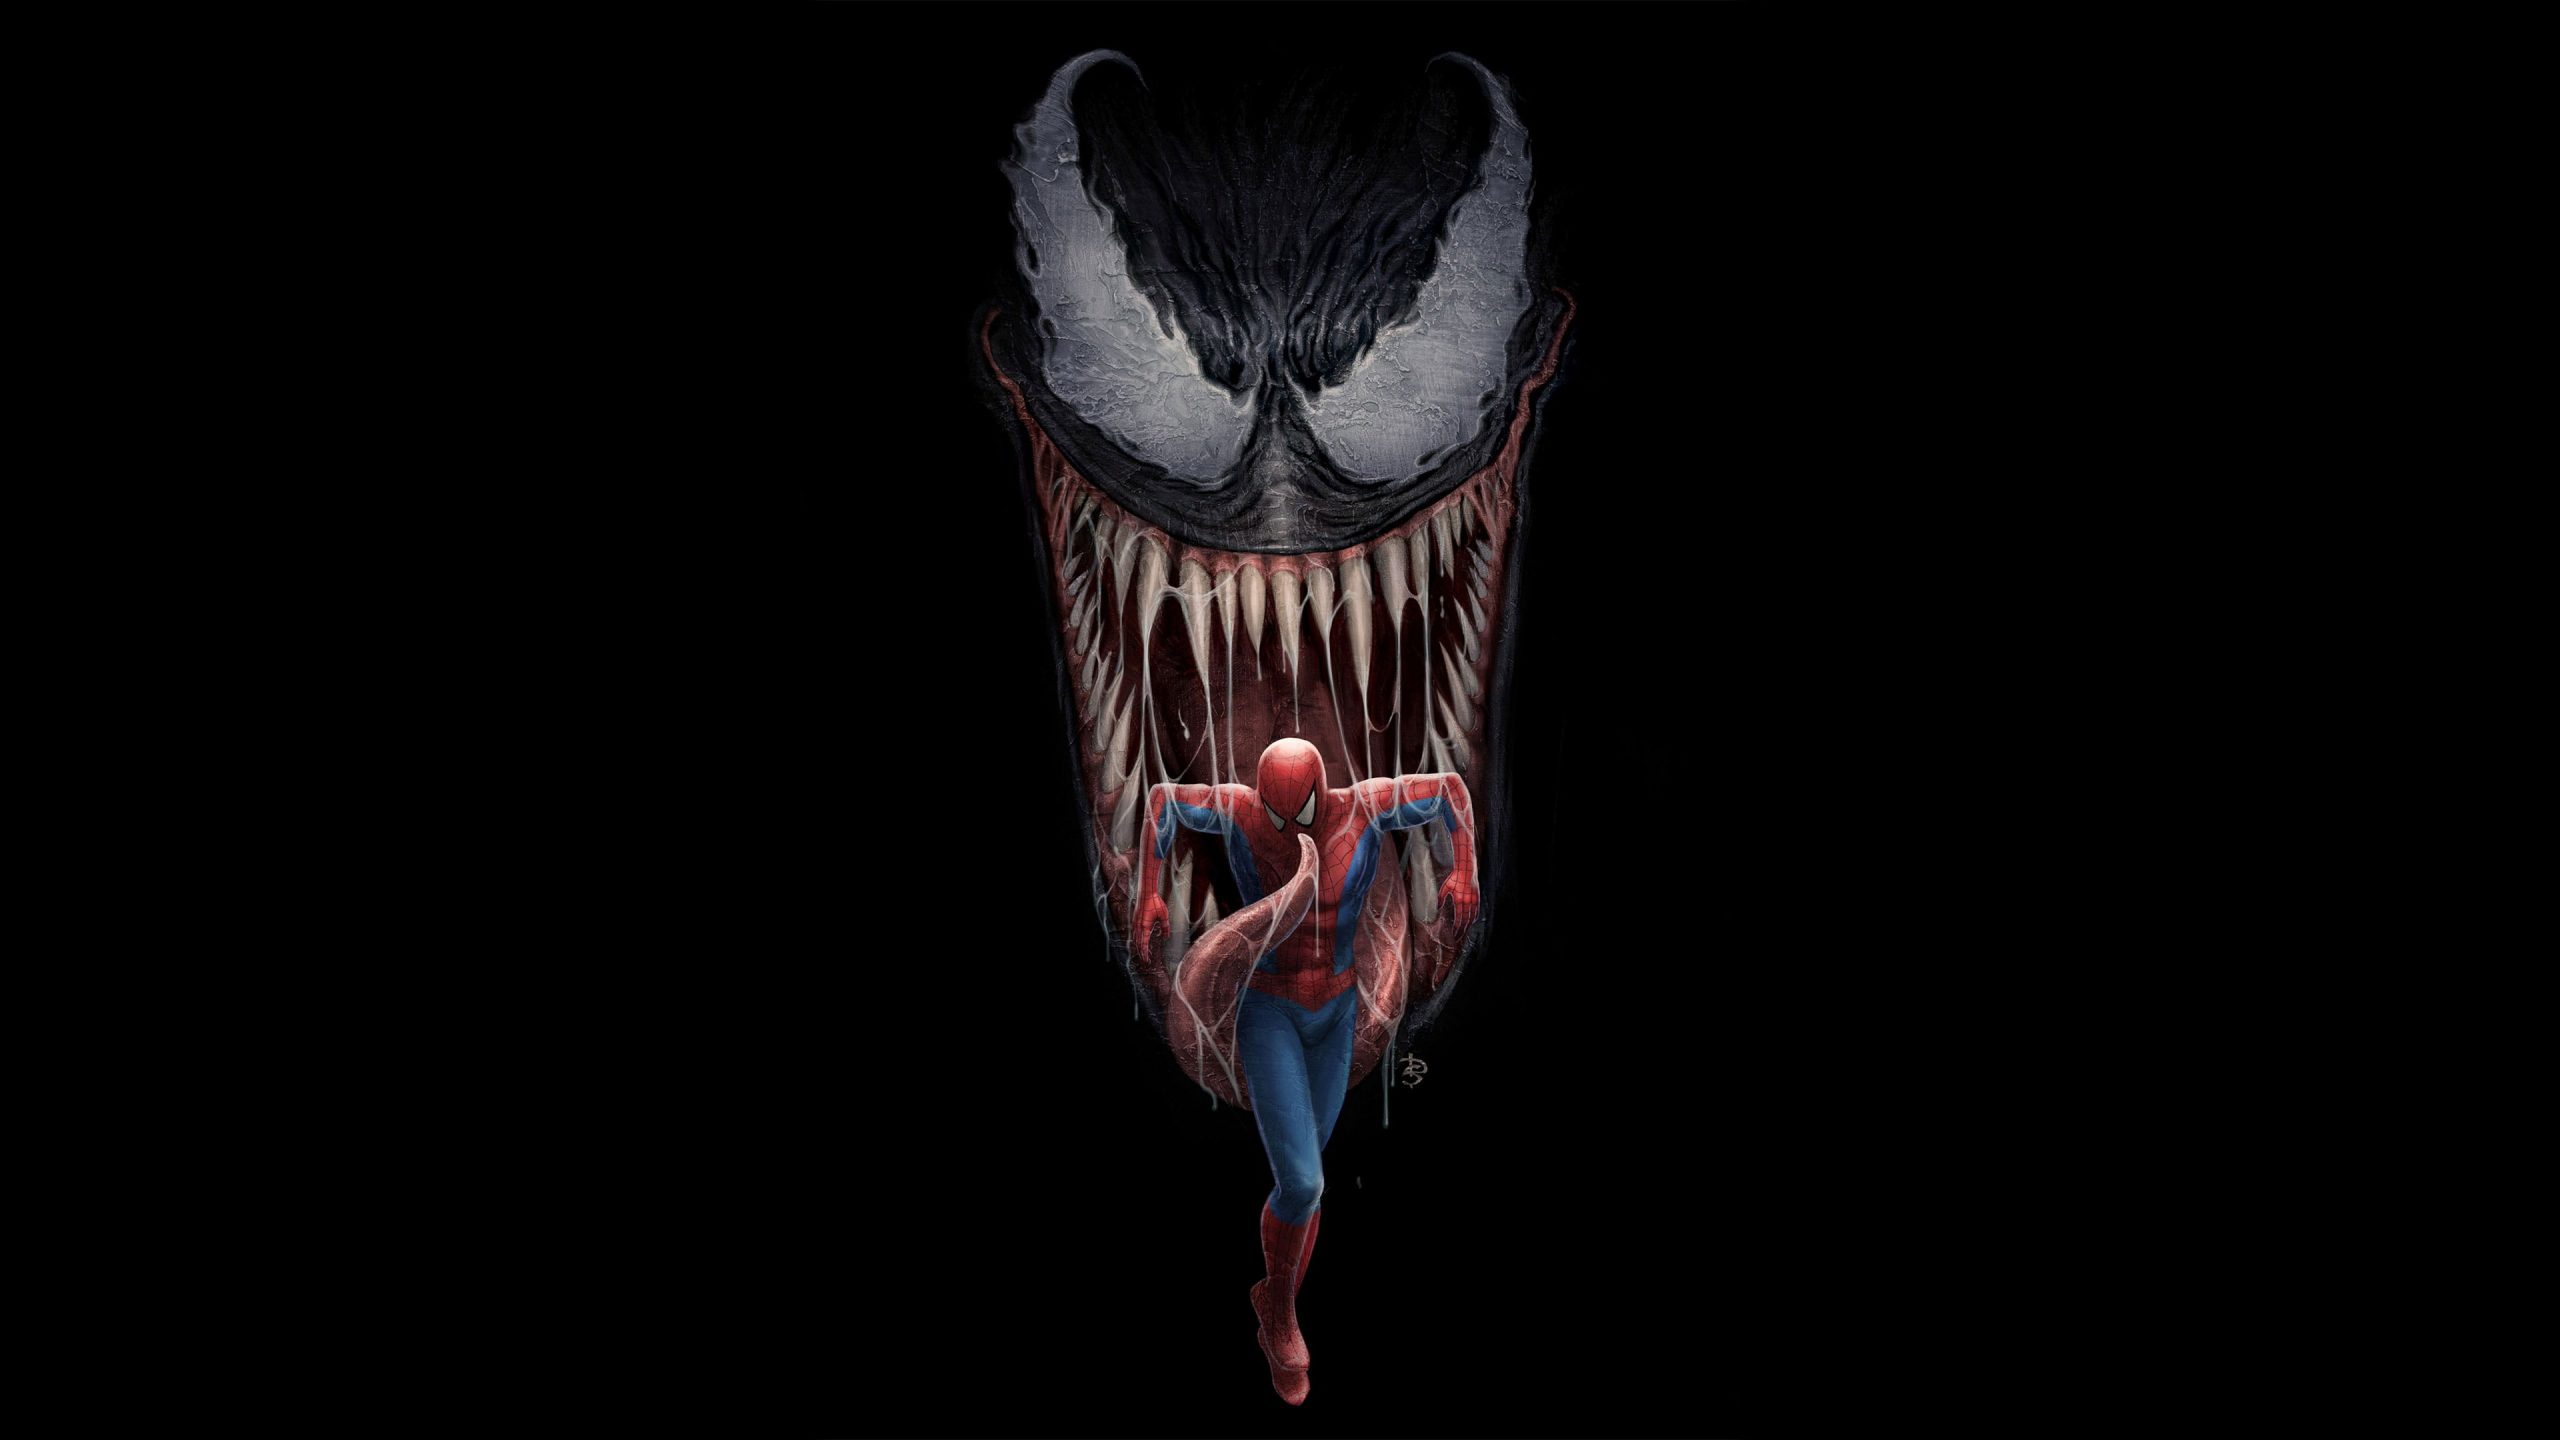 Wallpaper Spiderman, Venom, Artwork, 4k, Hd, Digital Art